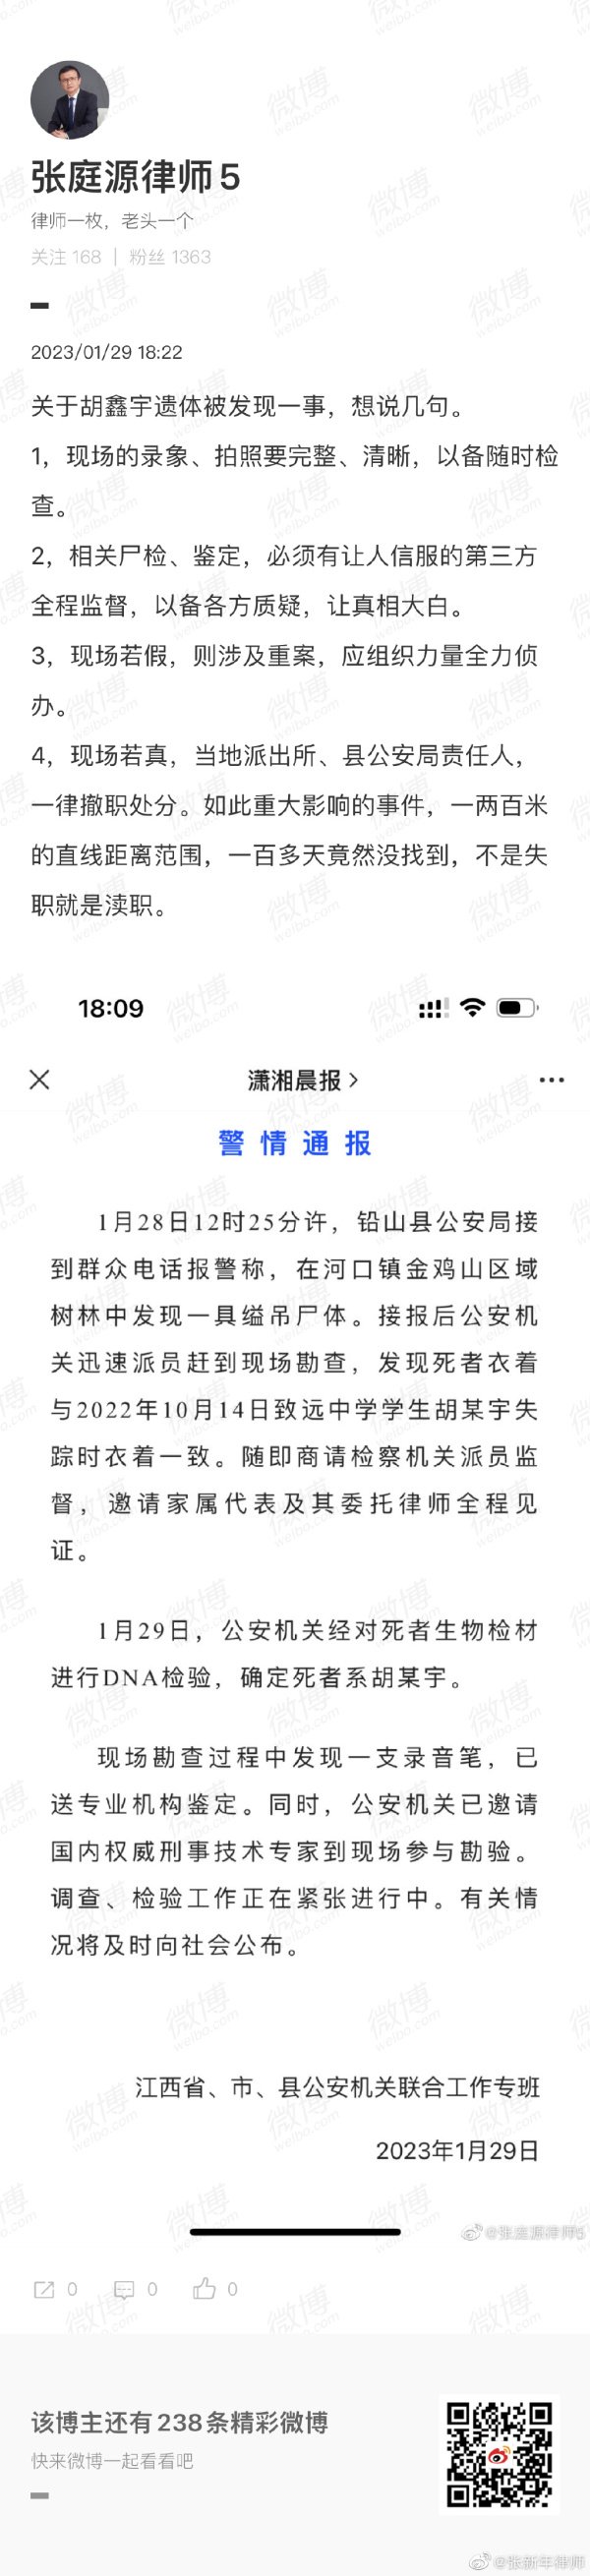 張新年律師質疑胡鑫宇案